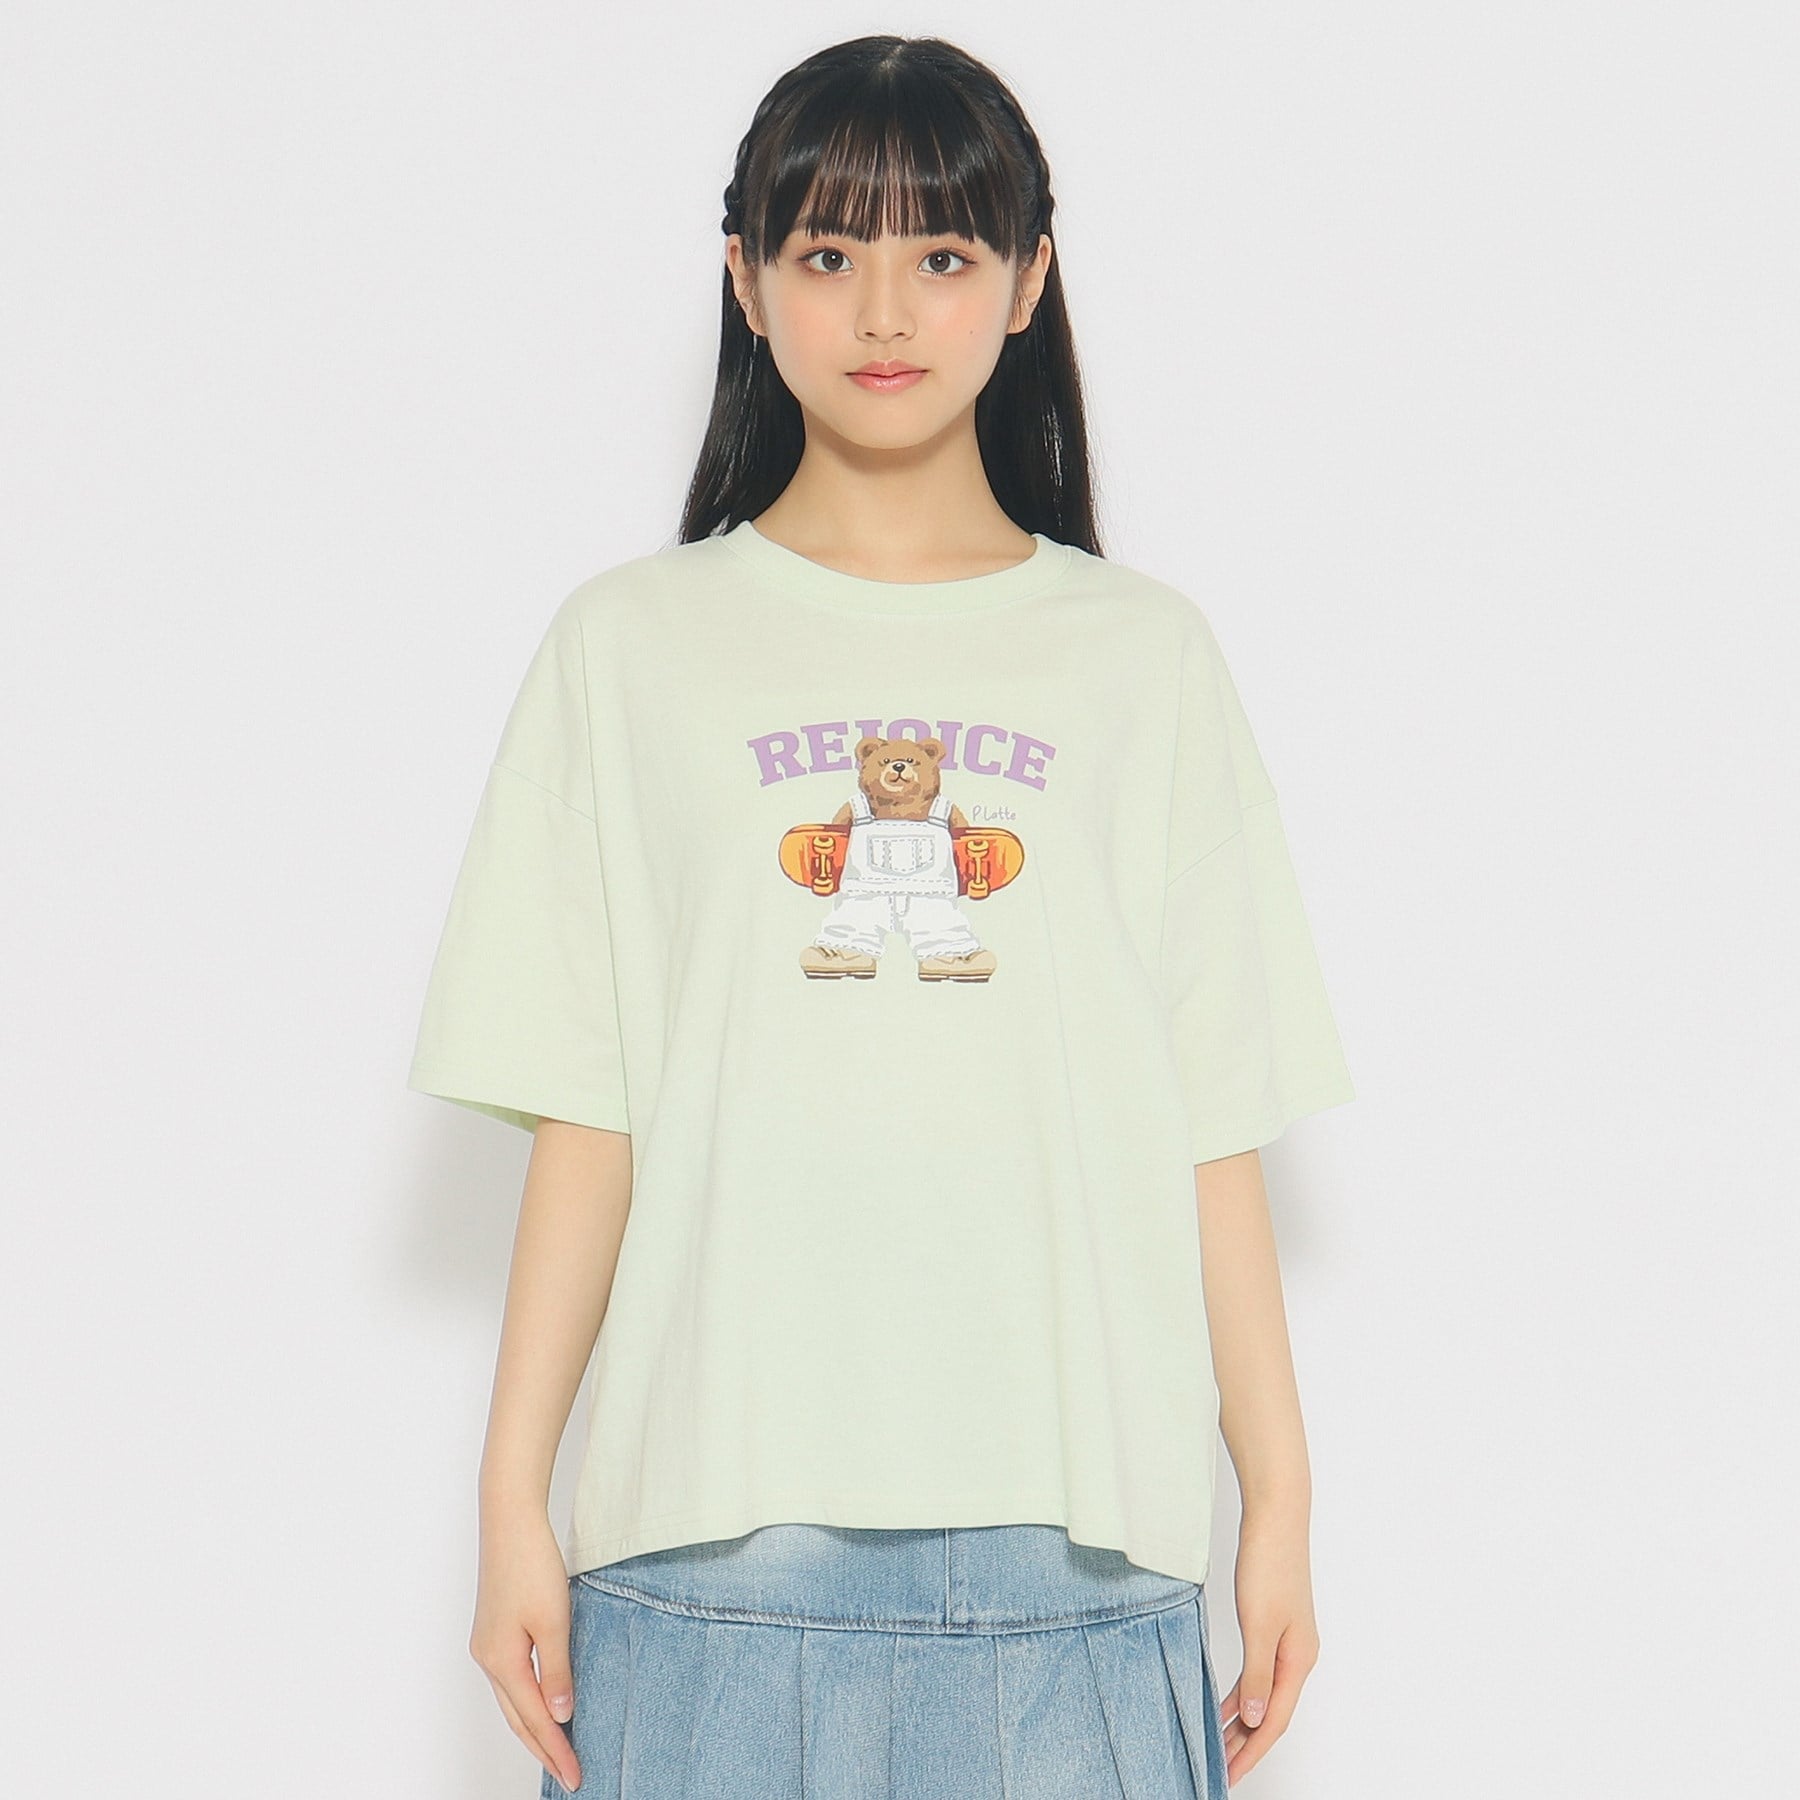 ピンク ラテ(PINK-latte)のスケボークマちゃんプリントTシャツ17